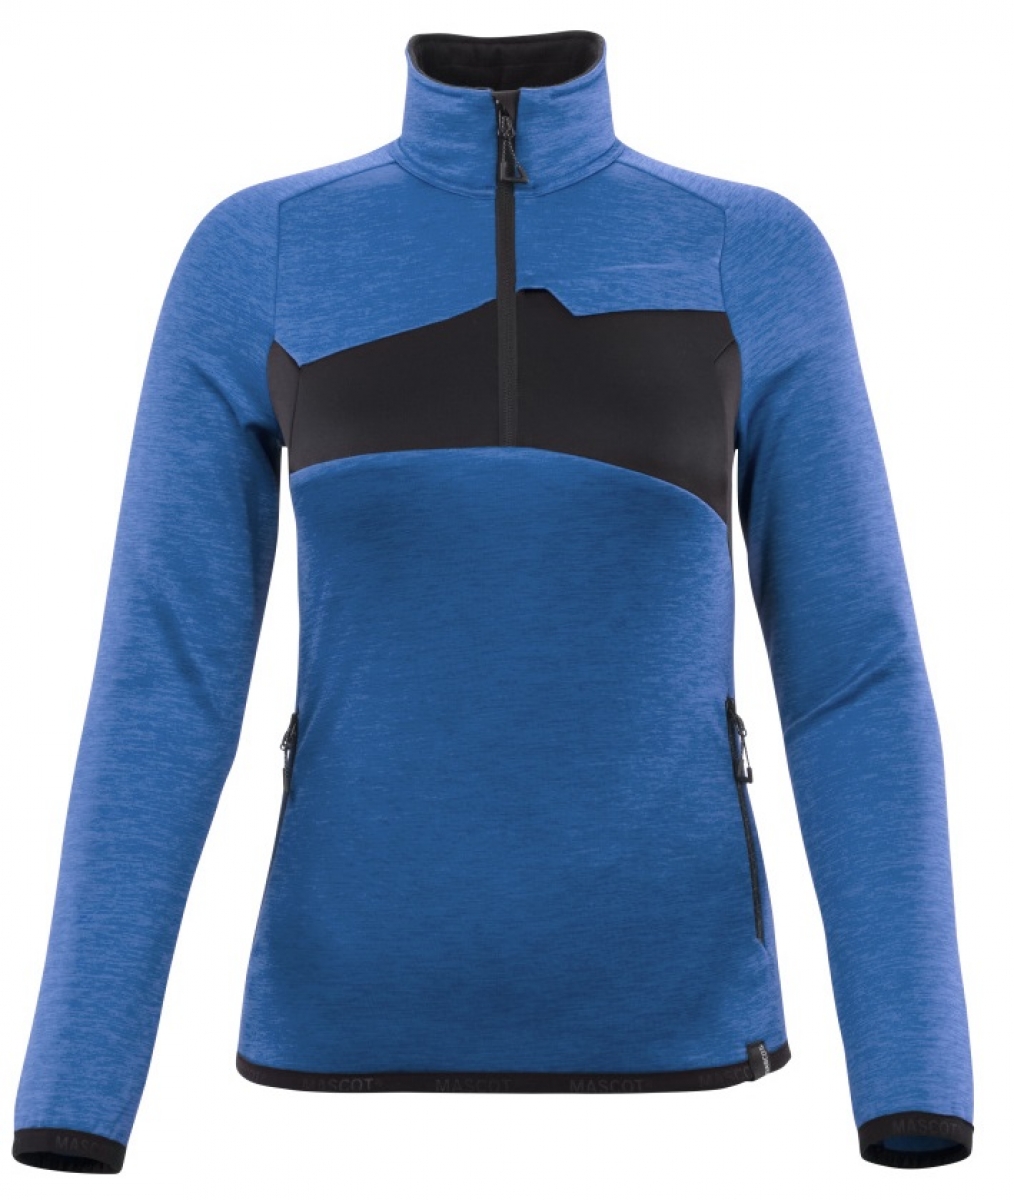 MASCOT-Workwear, Klteschutz, Damen-Fleecepullover mit kurzem Reiverschluss, 260 g/m, azurblau/schwarzblau